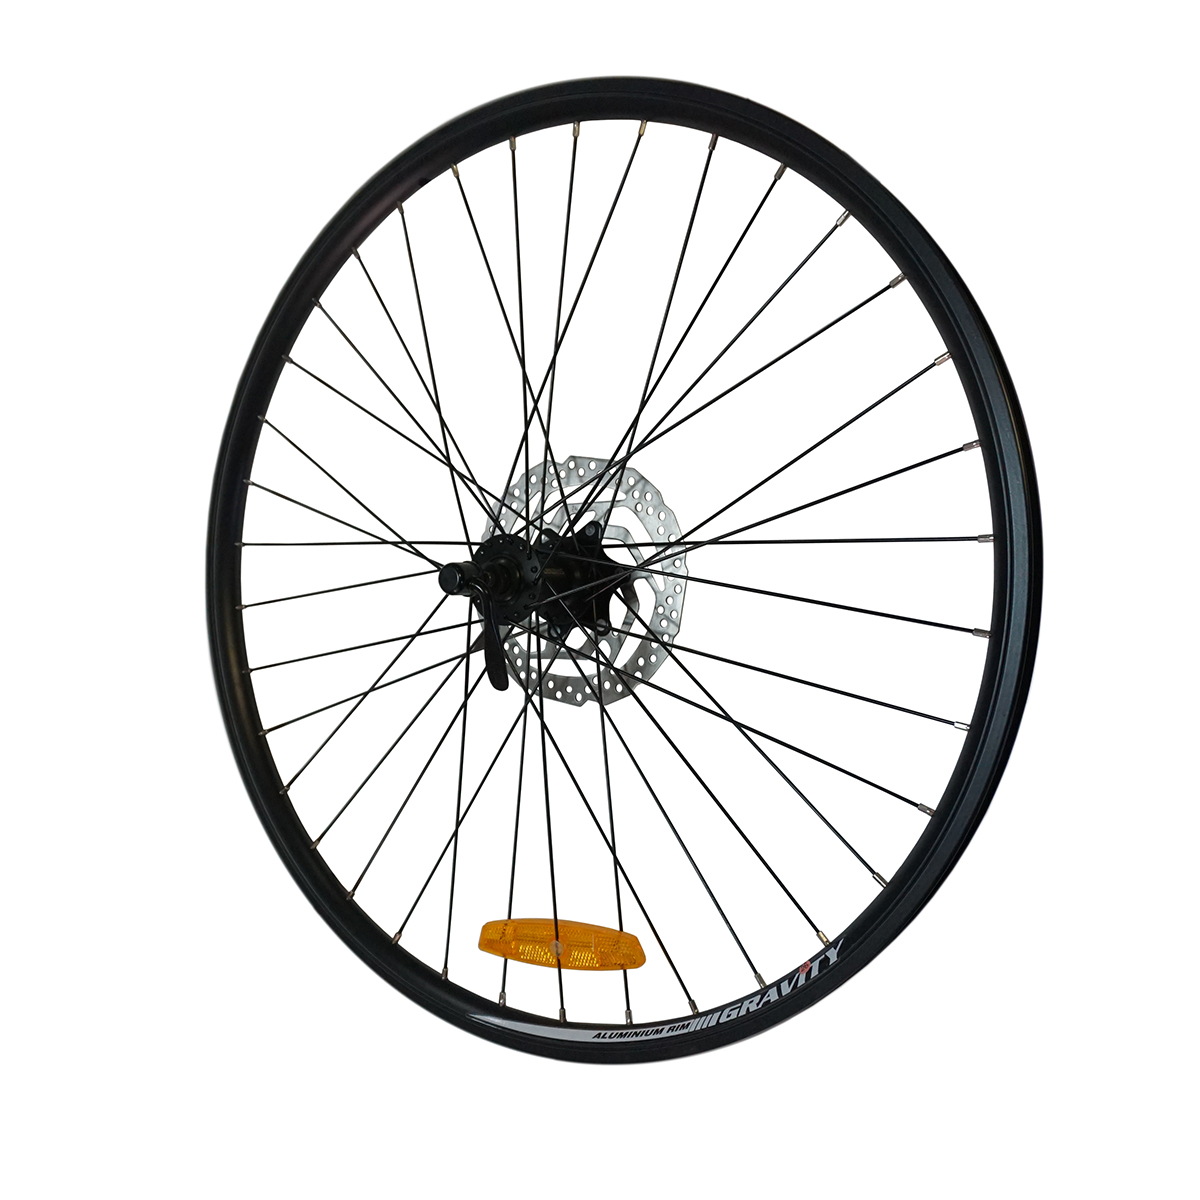 Обзор колес велосипедов. Переднее колесо велосипеда 26. Переднее колесо велосипеда 26 под дисковый тормоз. Колесо 26дюймоа велосипеда 26. Заднее 26 колесо на велосипед с дисковыми тормозами.